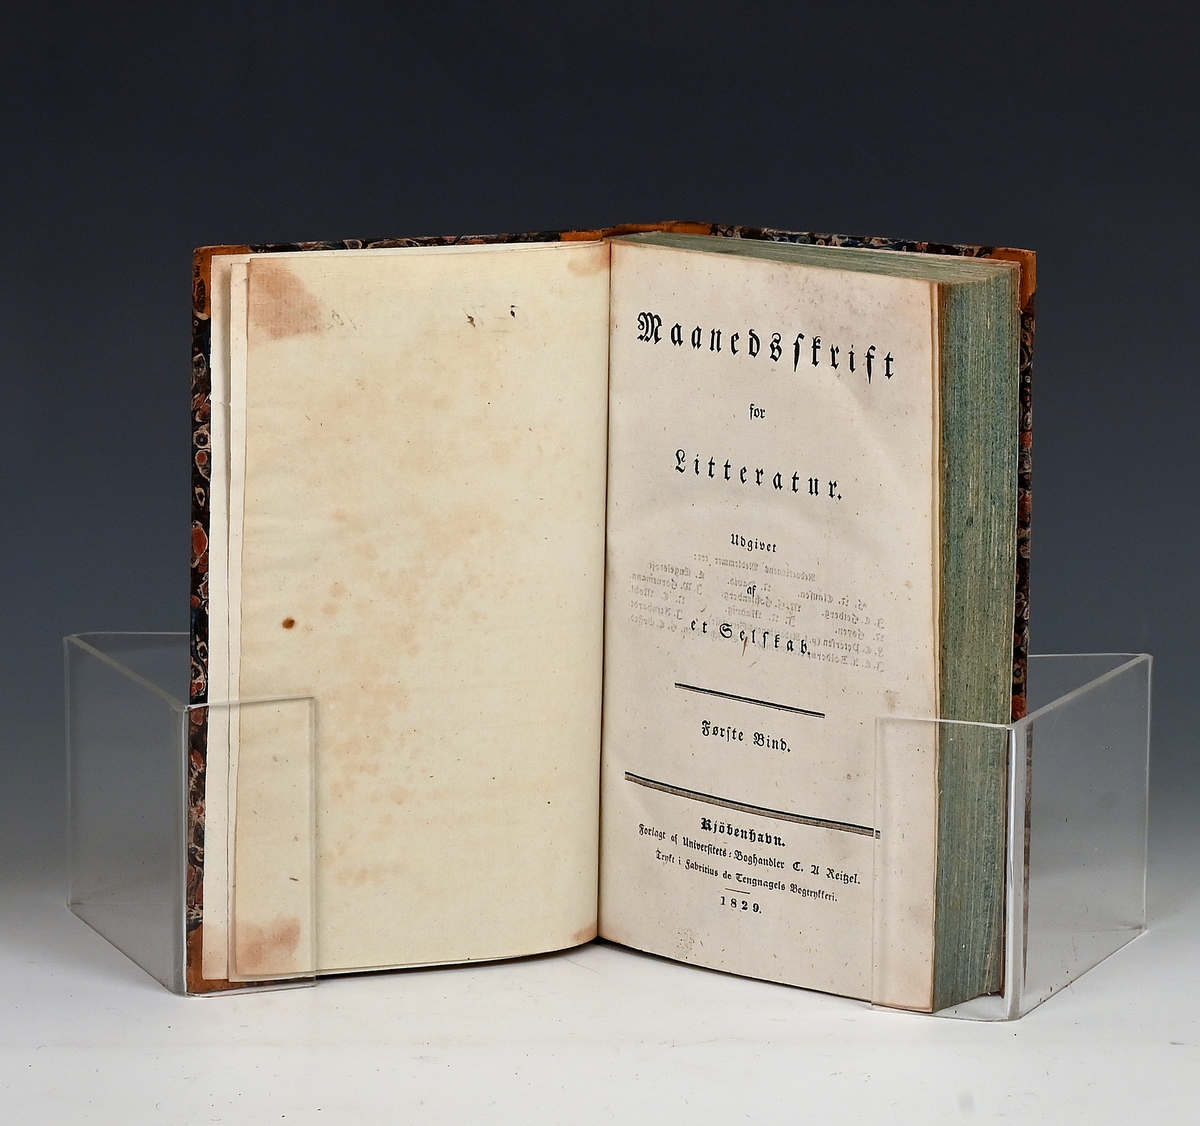 Maanedsskrift for litteratur. Første bind. Kbhv. 1829.